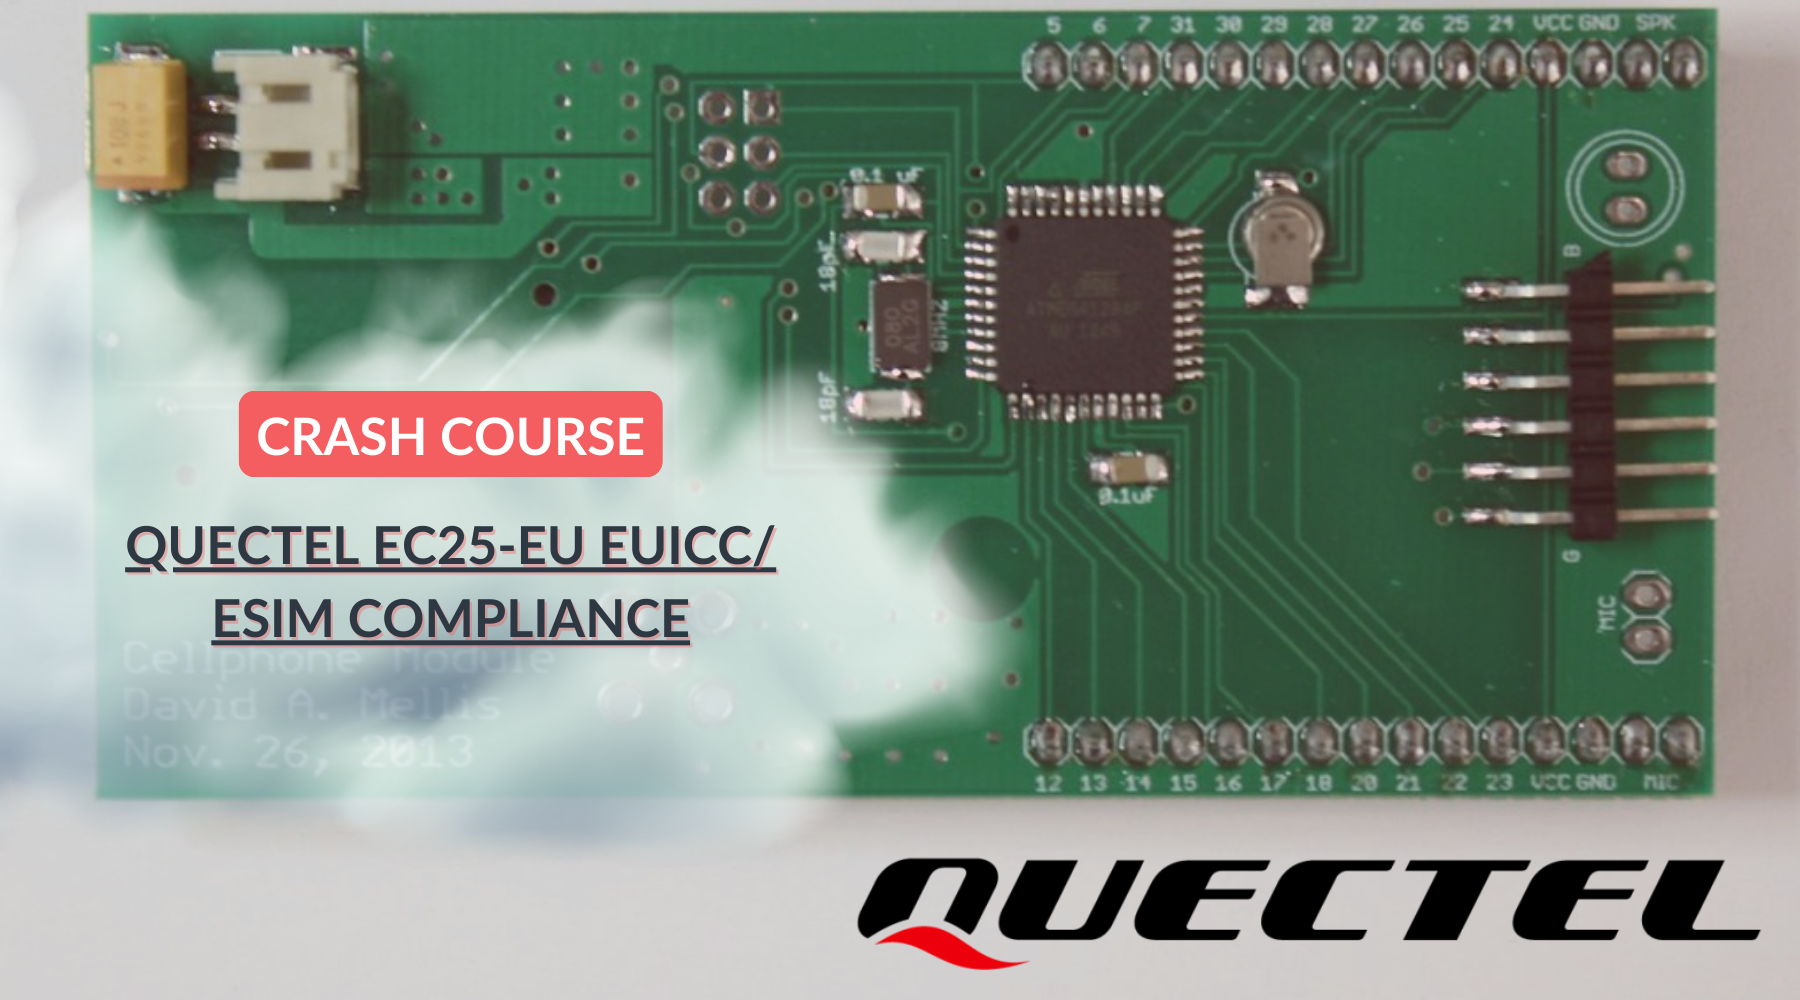 QUECTEL EC25-EU EUICC/ ESIM COMPLIANCE with ConnectedYou